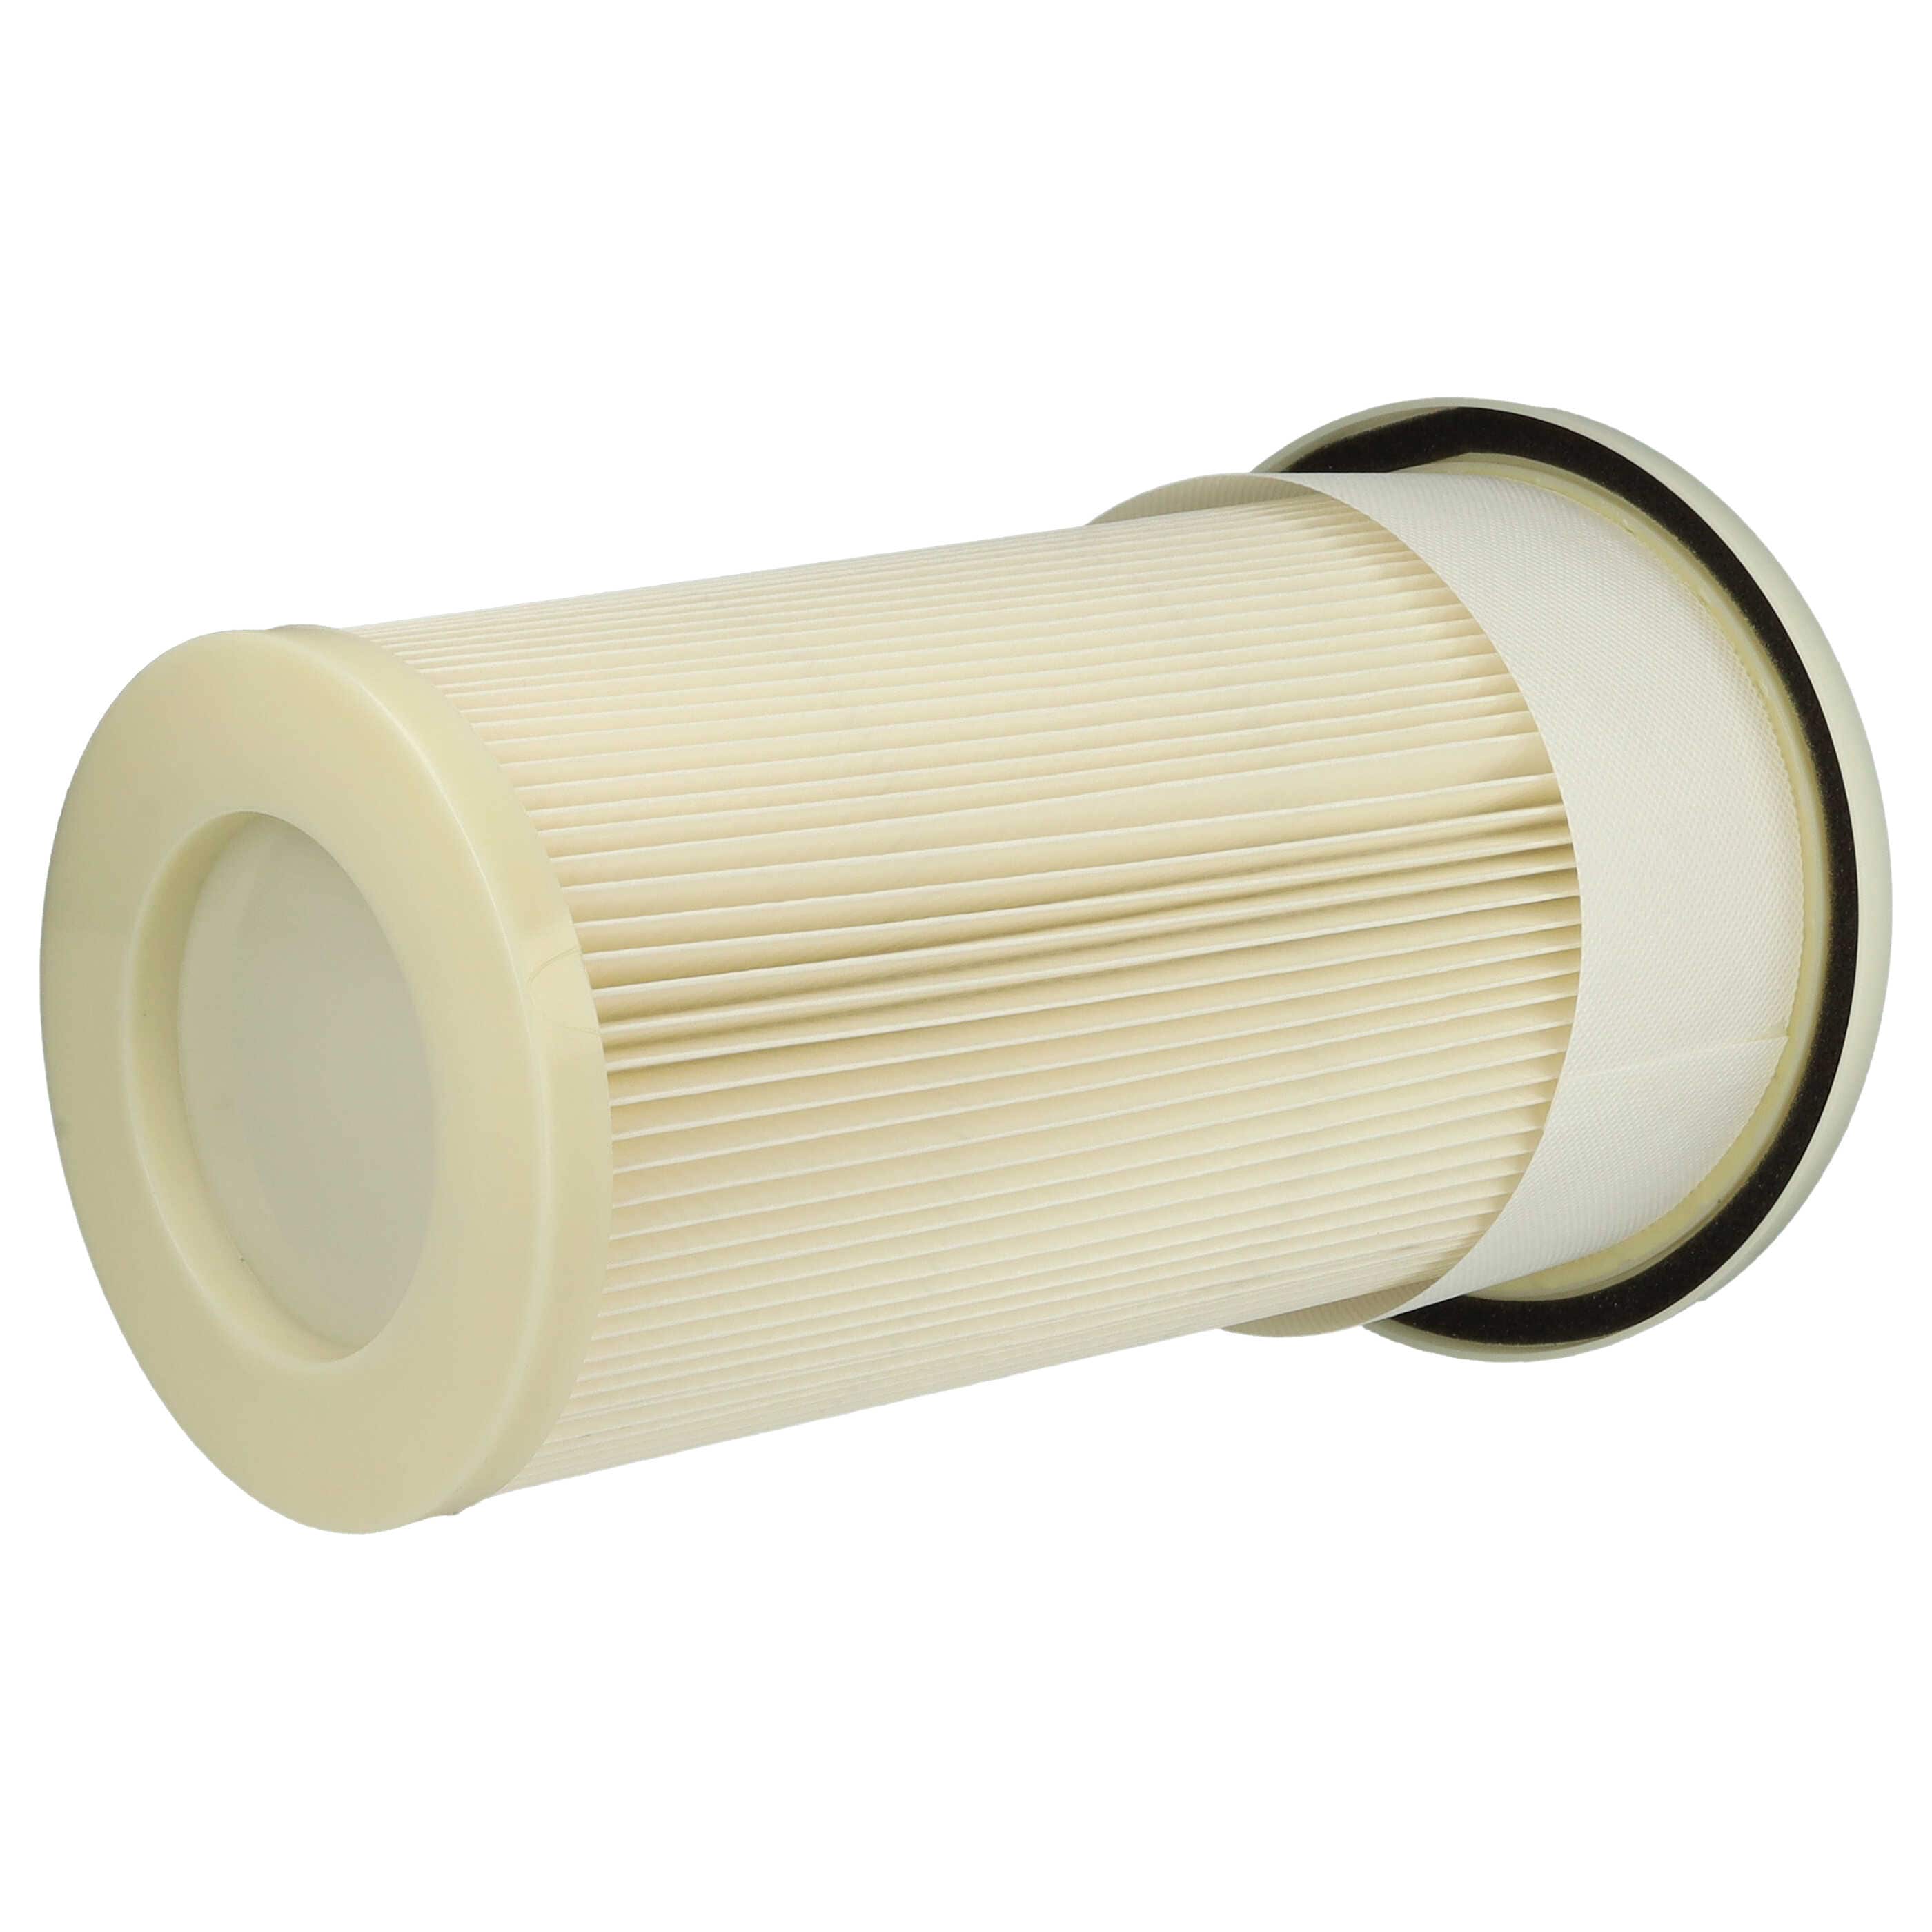 Filtr do odkurzacza Dustcontrol zamiennik Dustcontrol 42029 - filtr drobny, biały